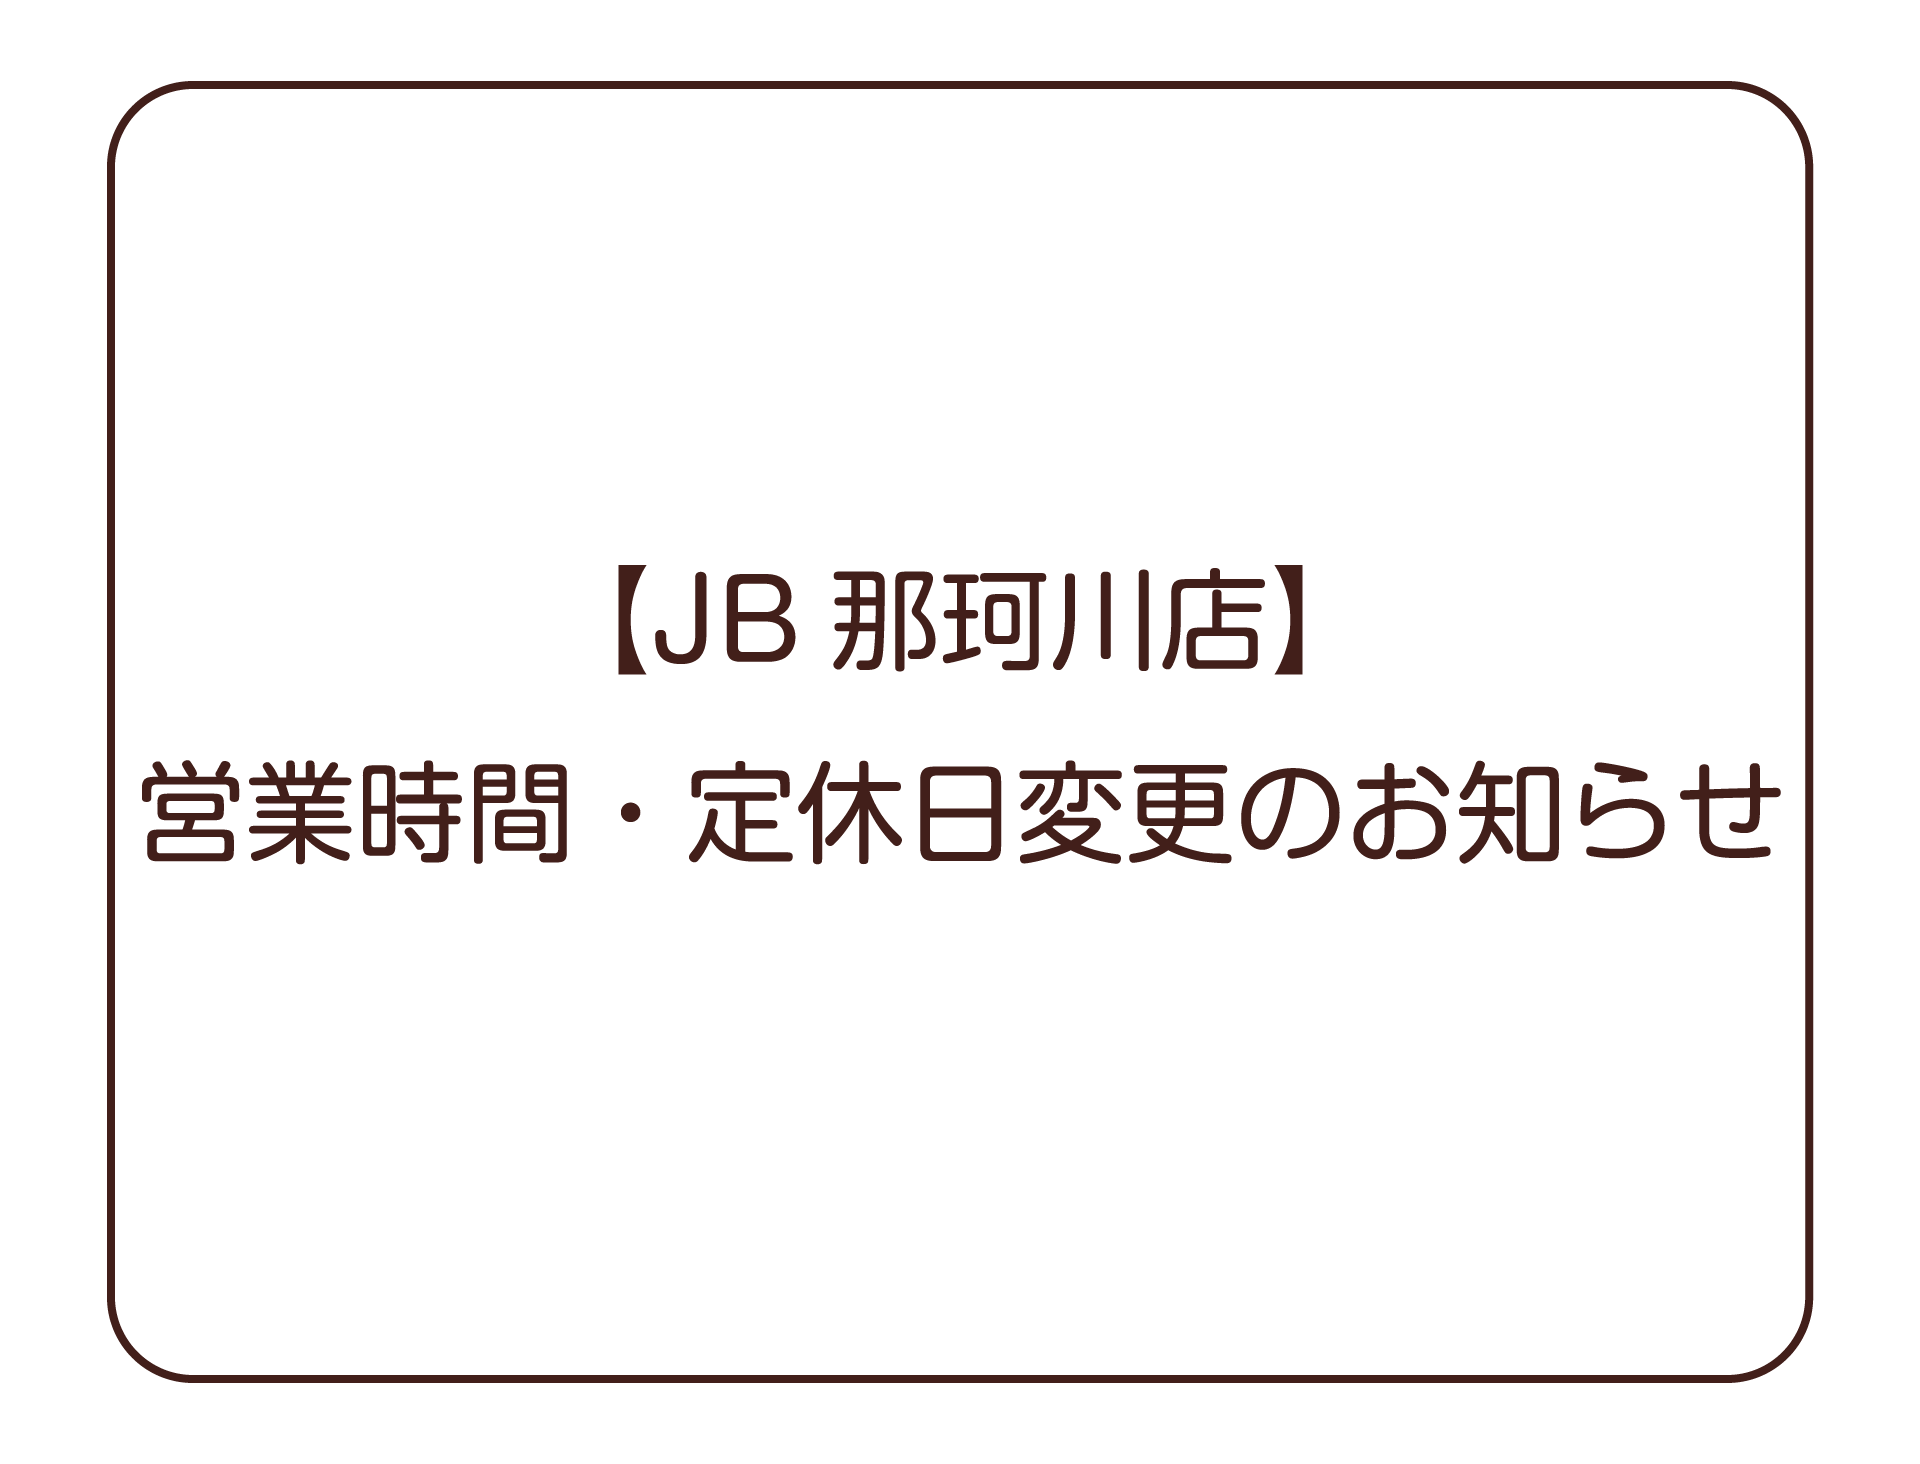 【JB那珂川店】営業時間・定休日変更のお知らせ